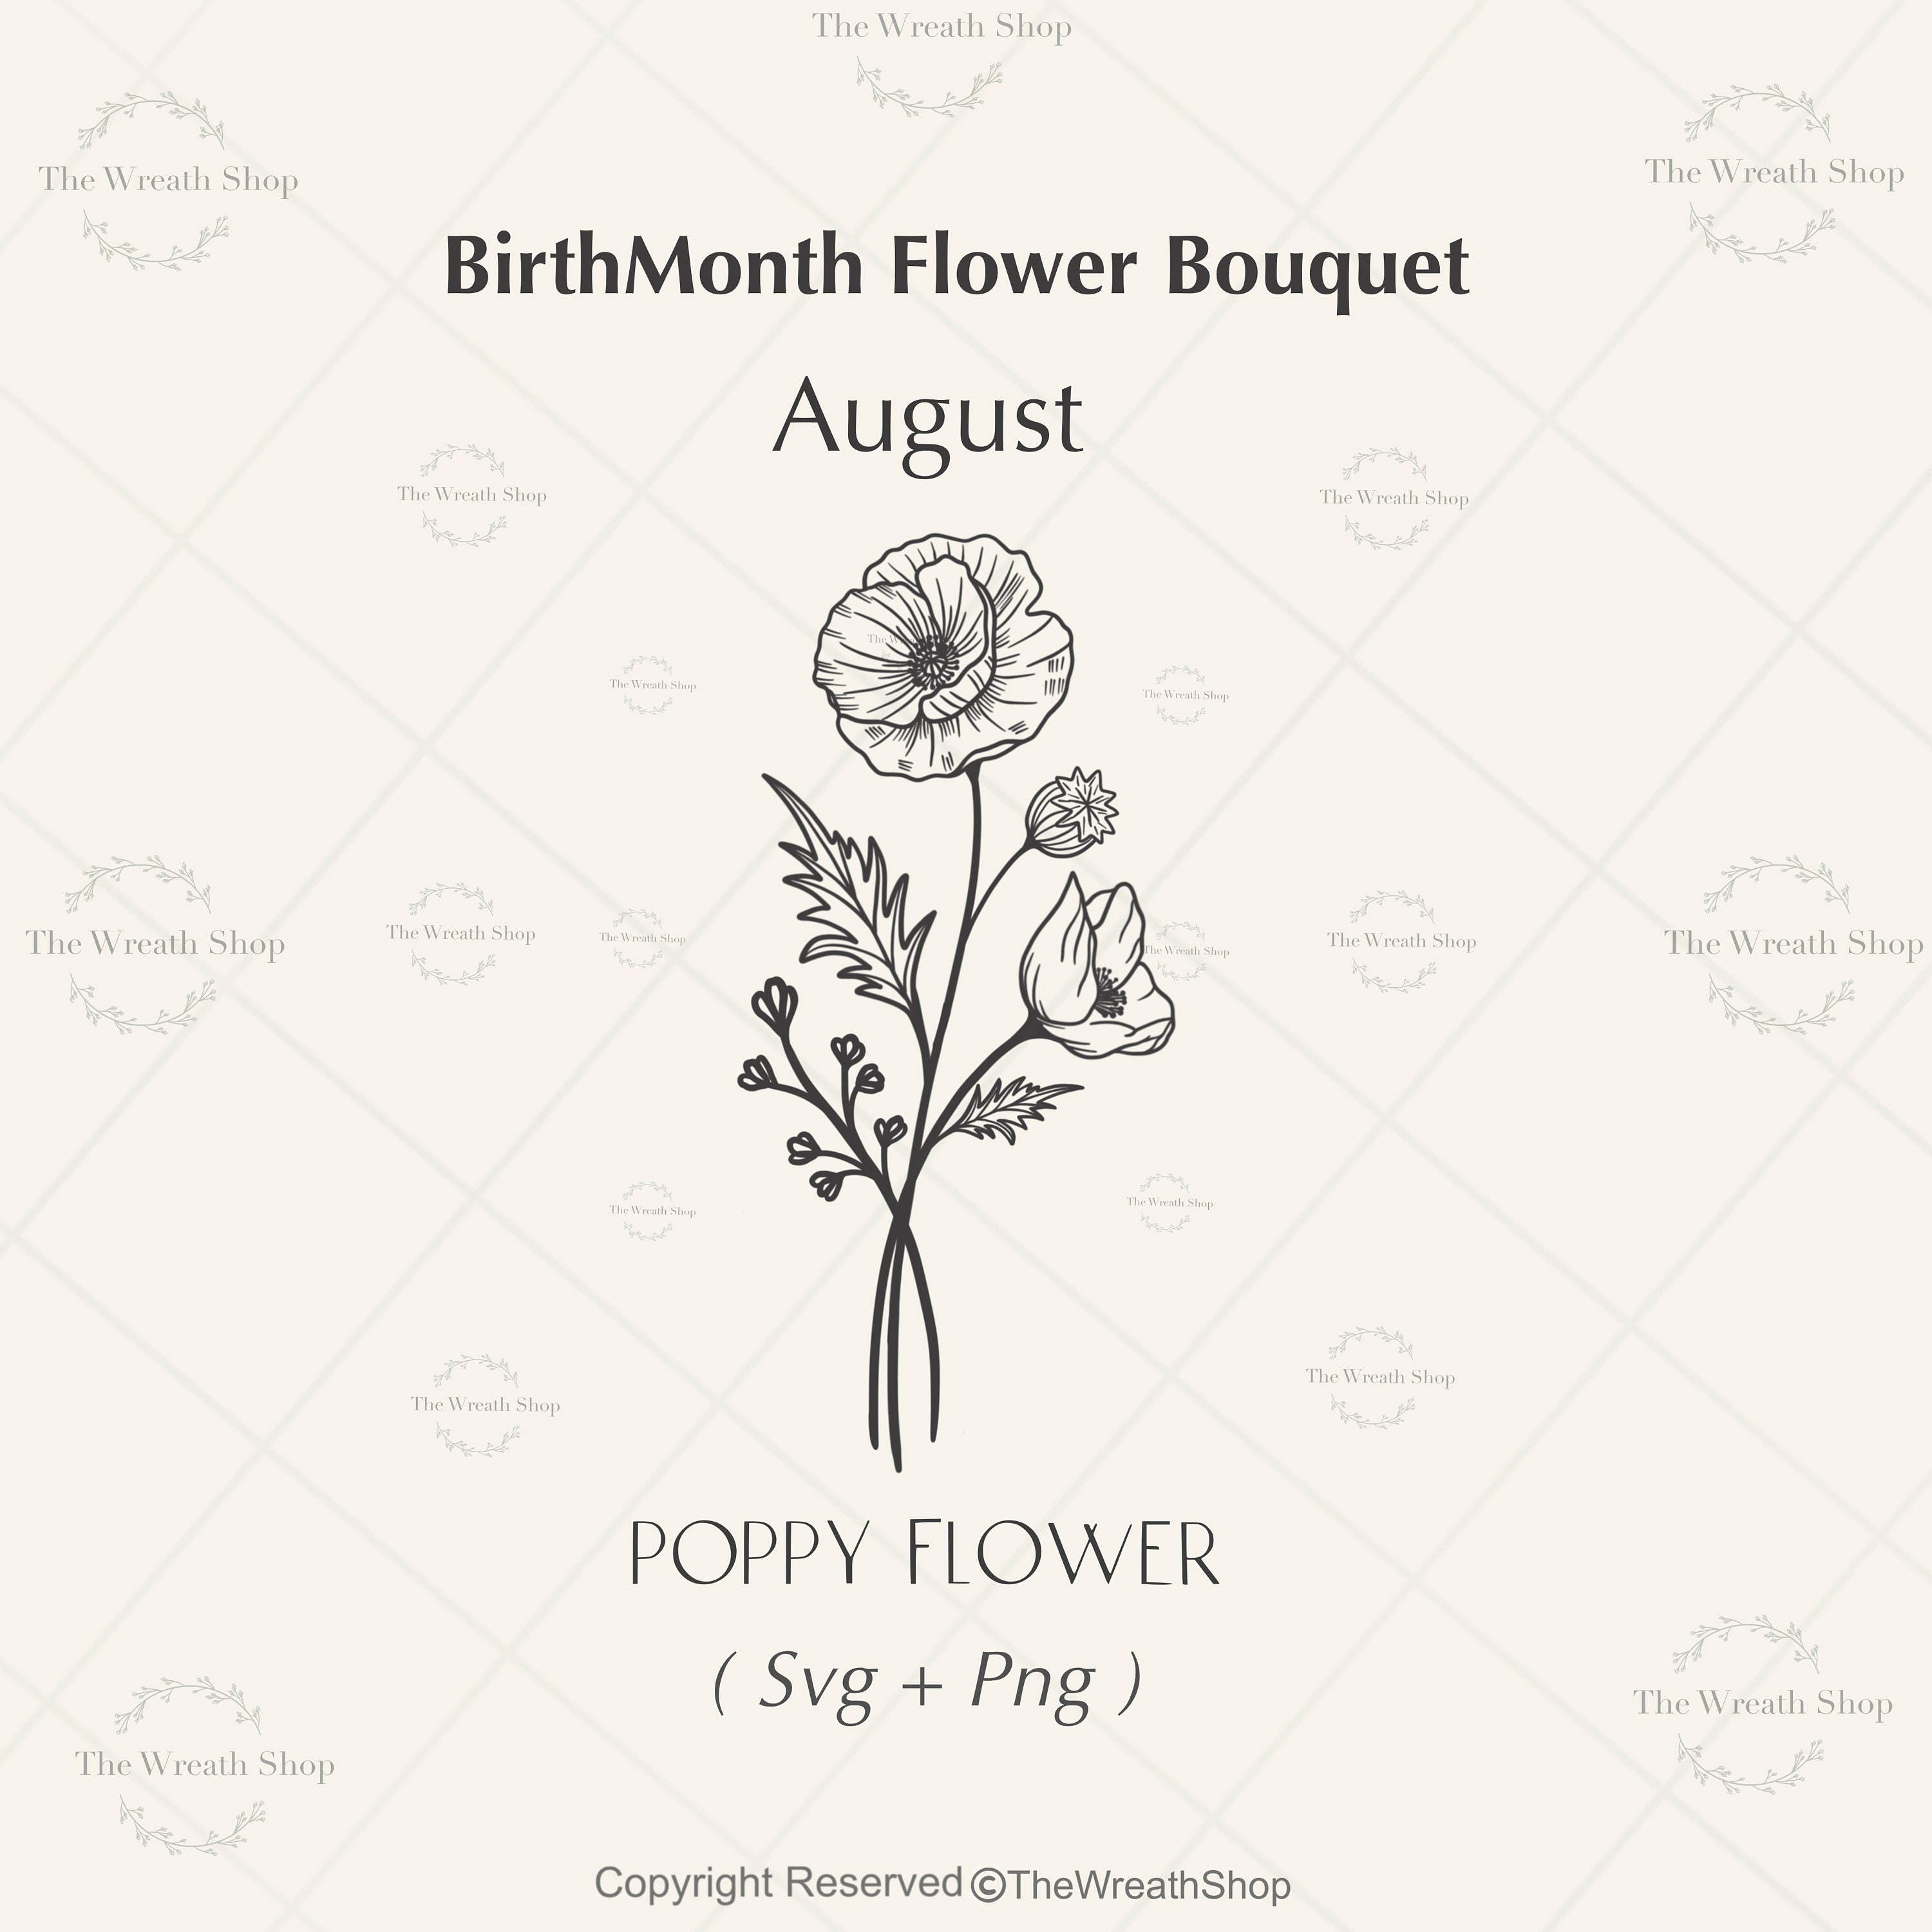 Poppy Flower Svg Gladiolus Flower Svg August Birth Month 49 Off